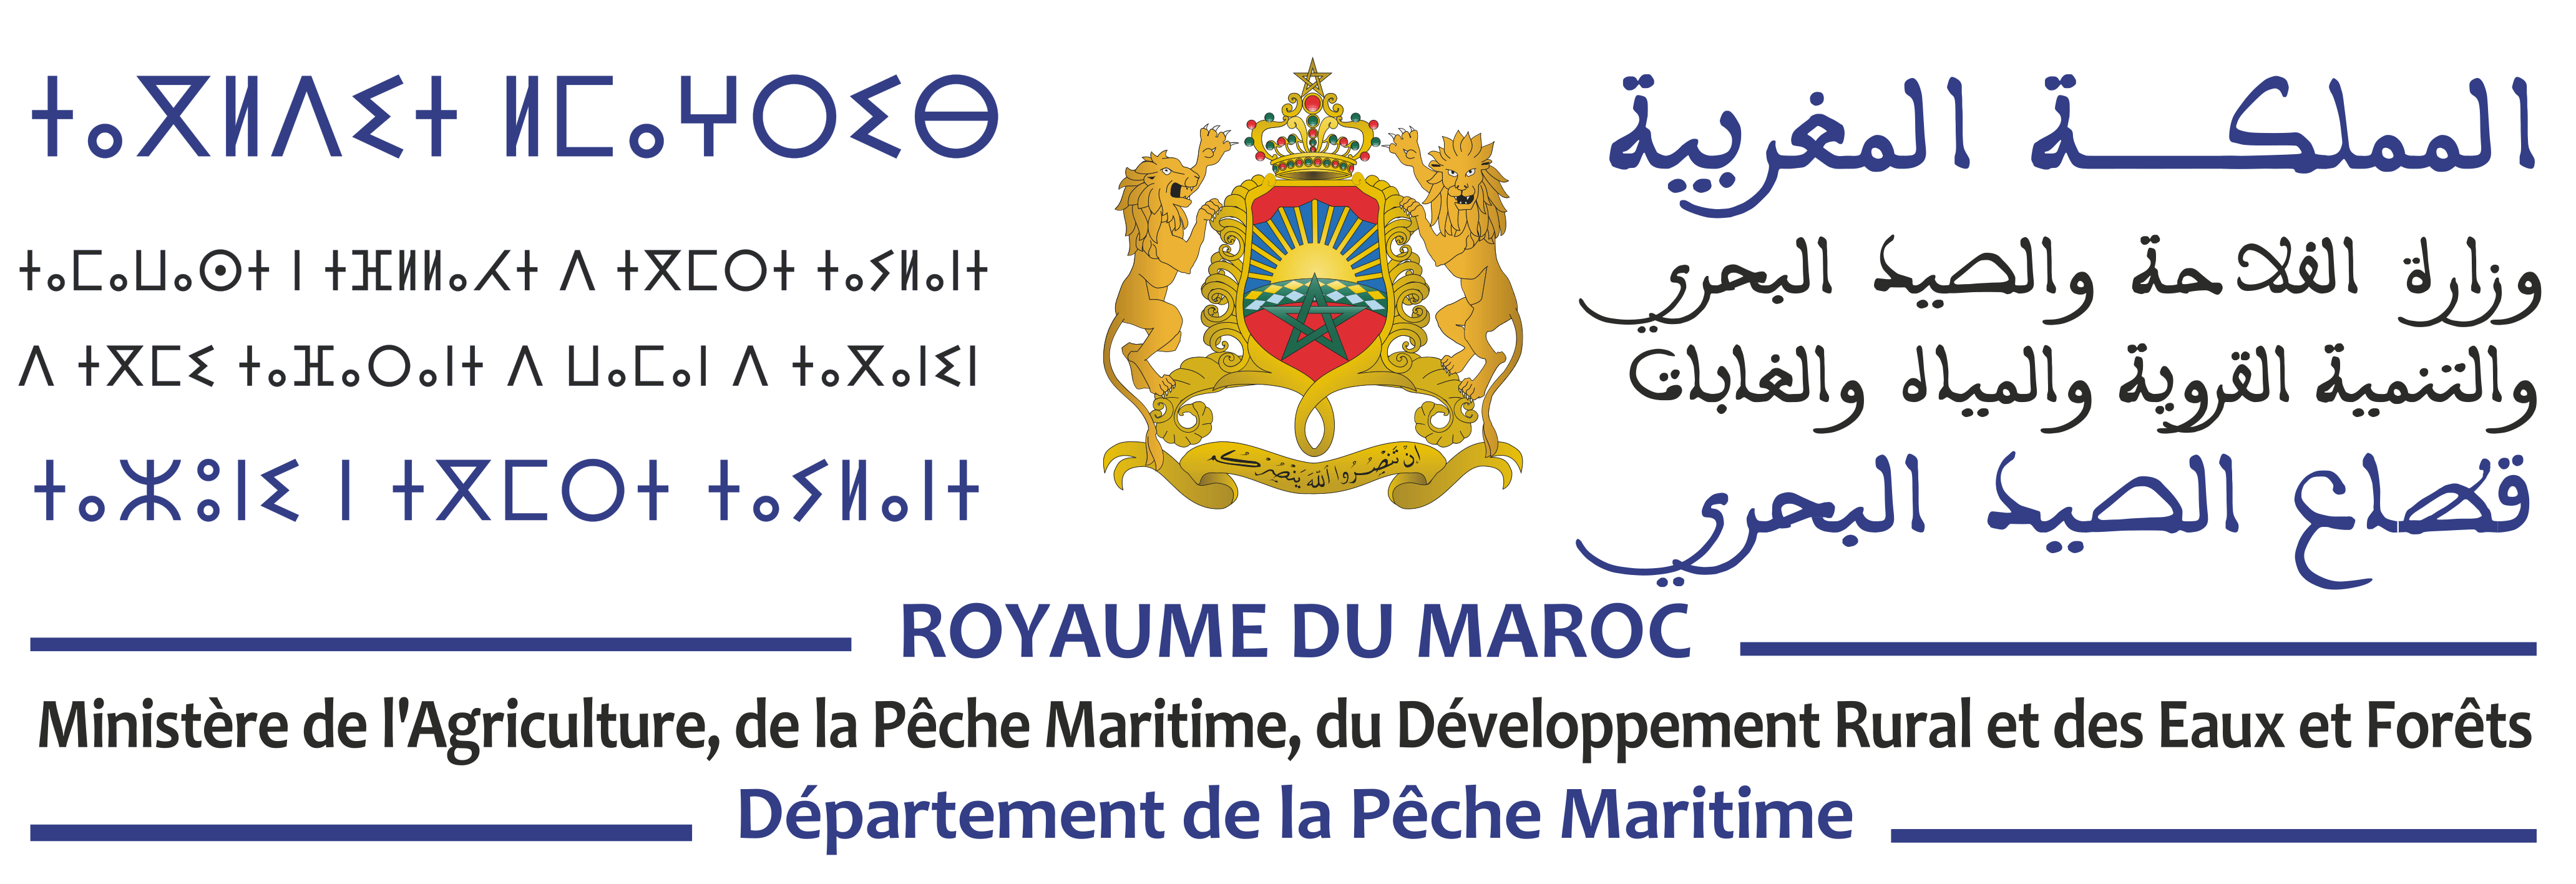 Département de la Pêche Maritime